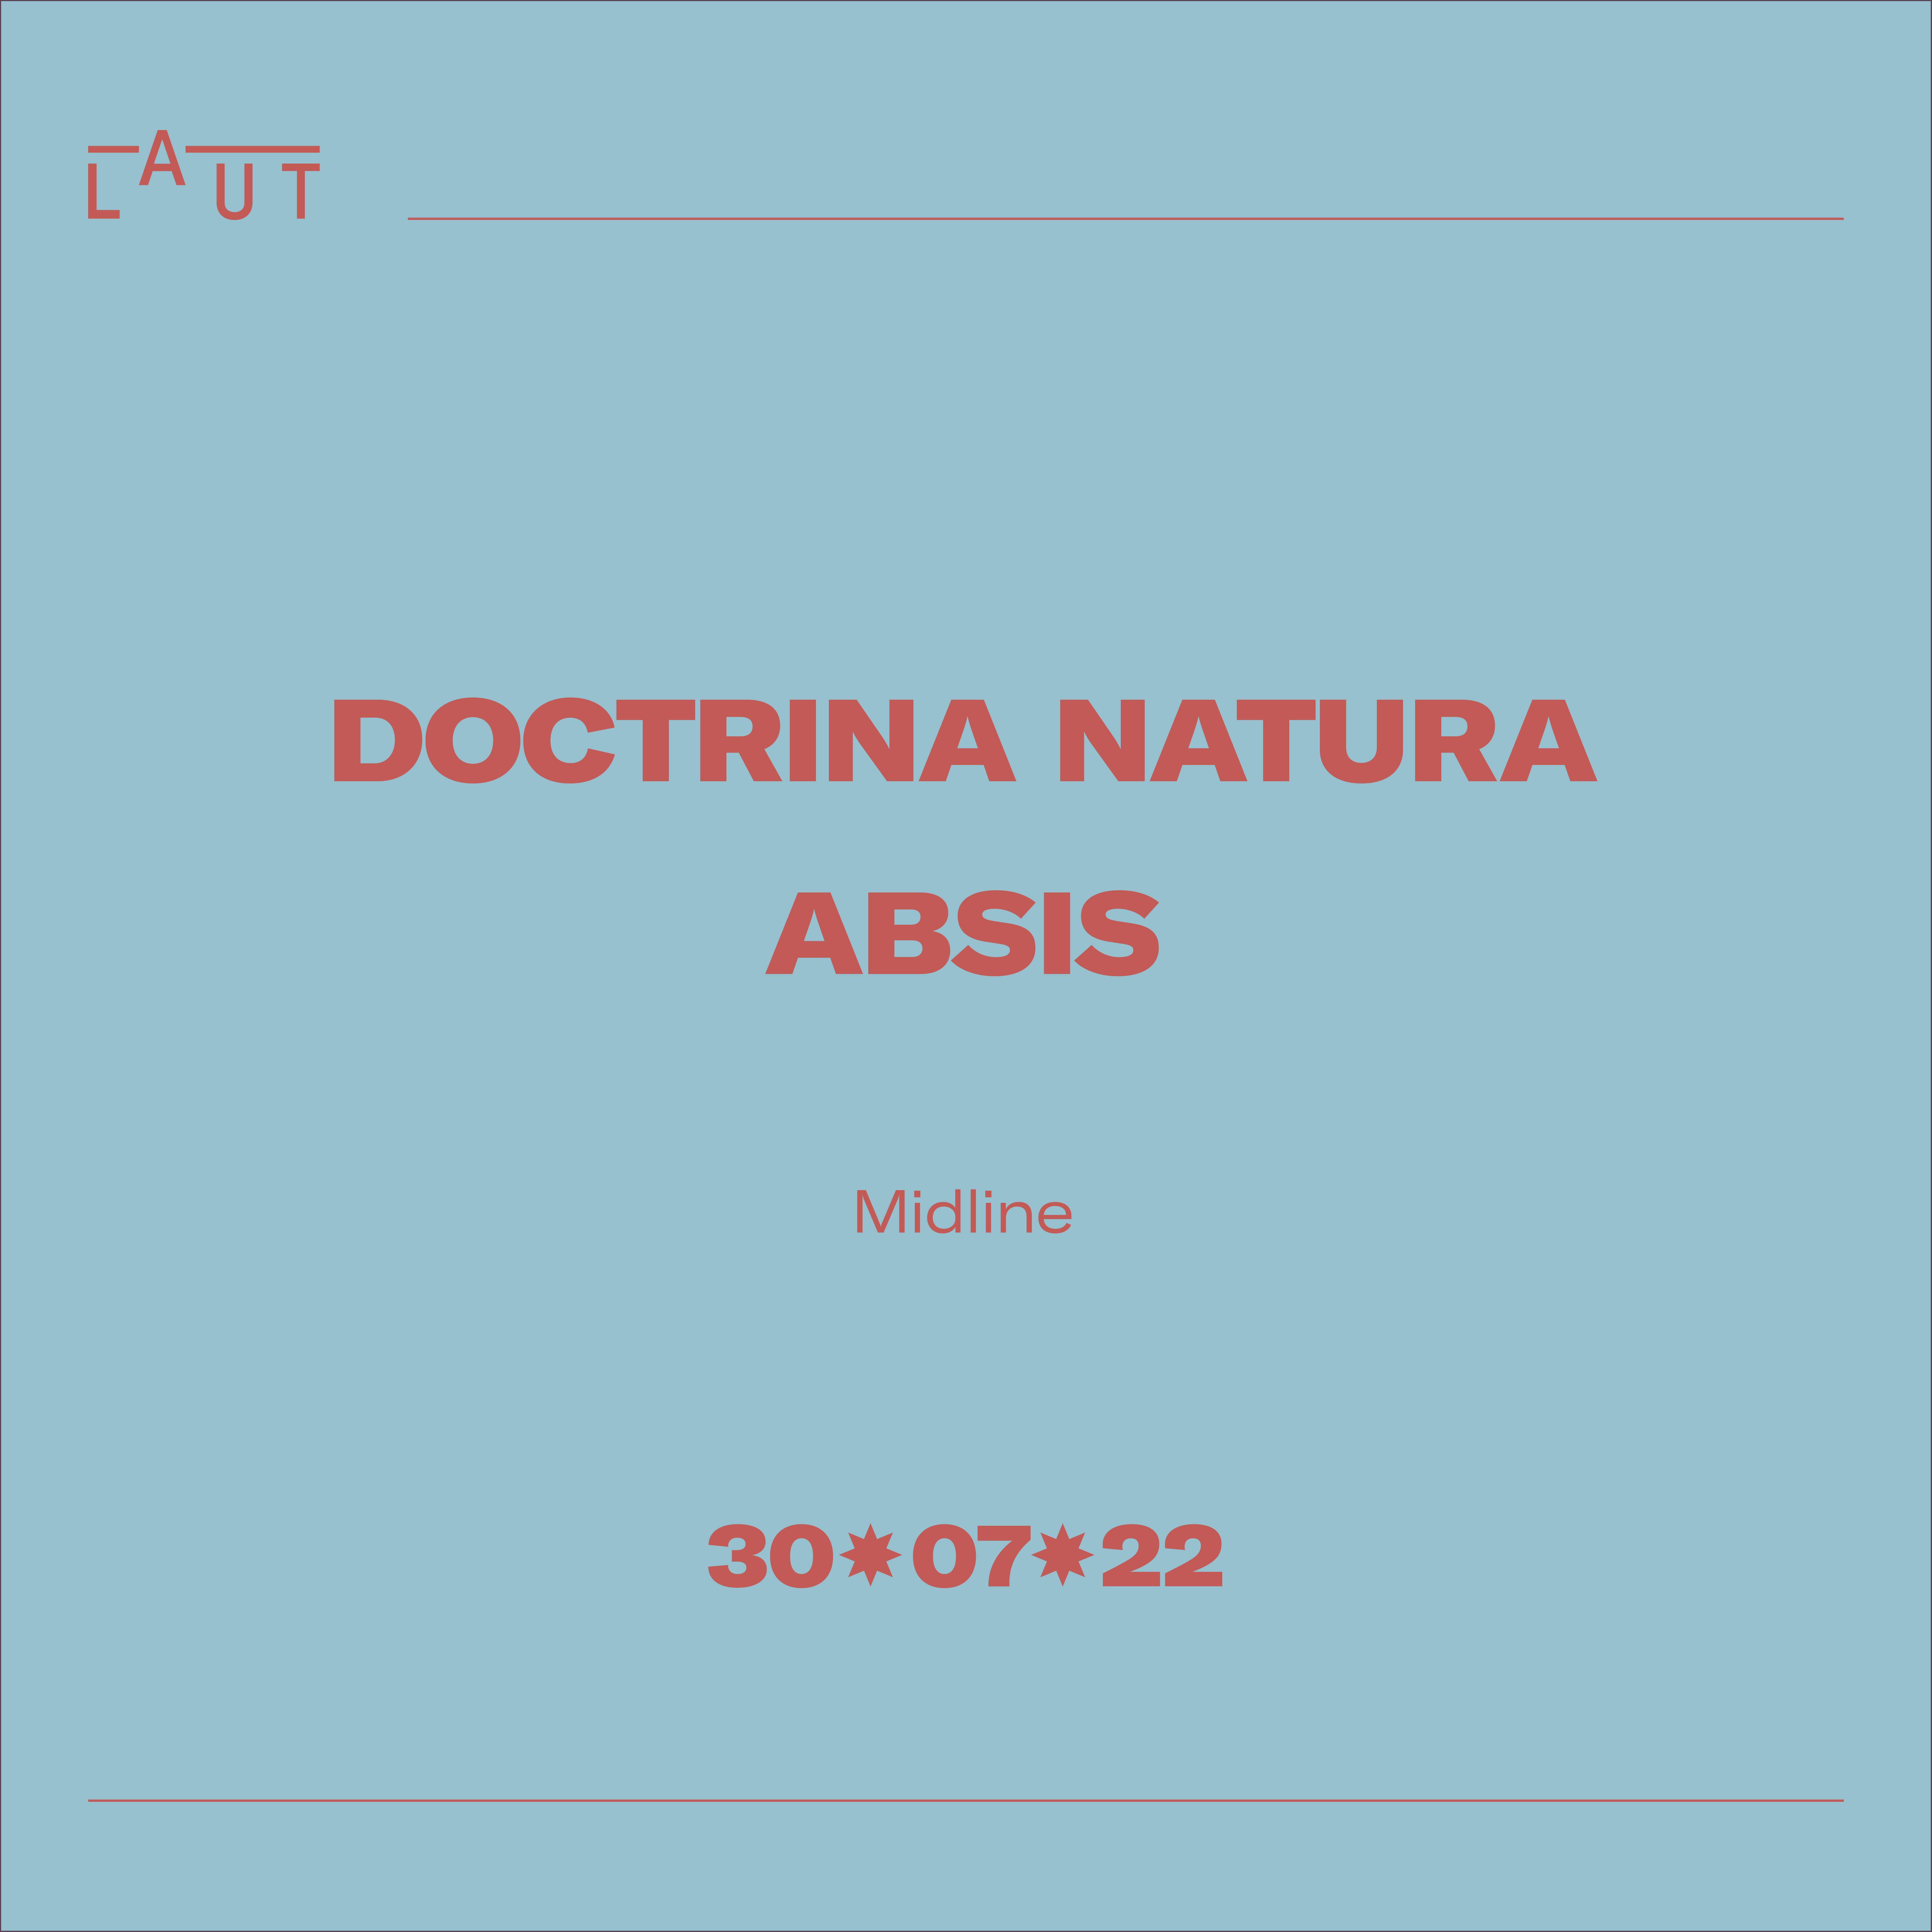 Doctrina Natura + ABSIS - Página frontal